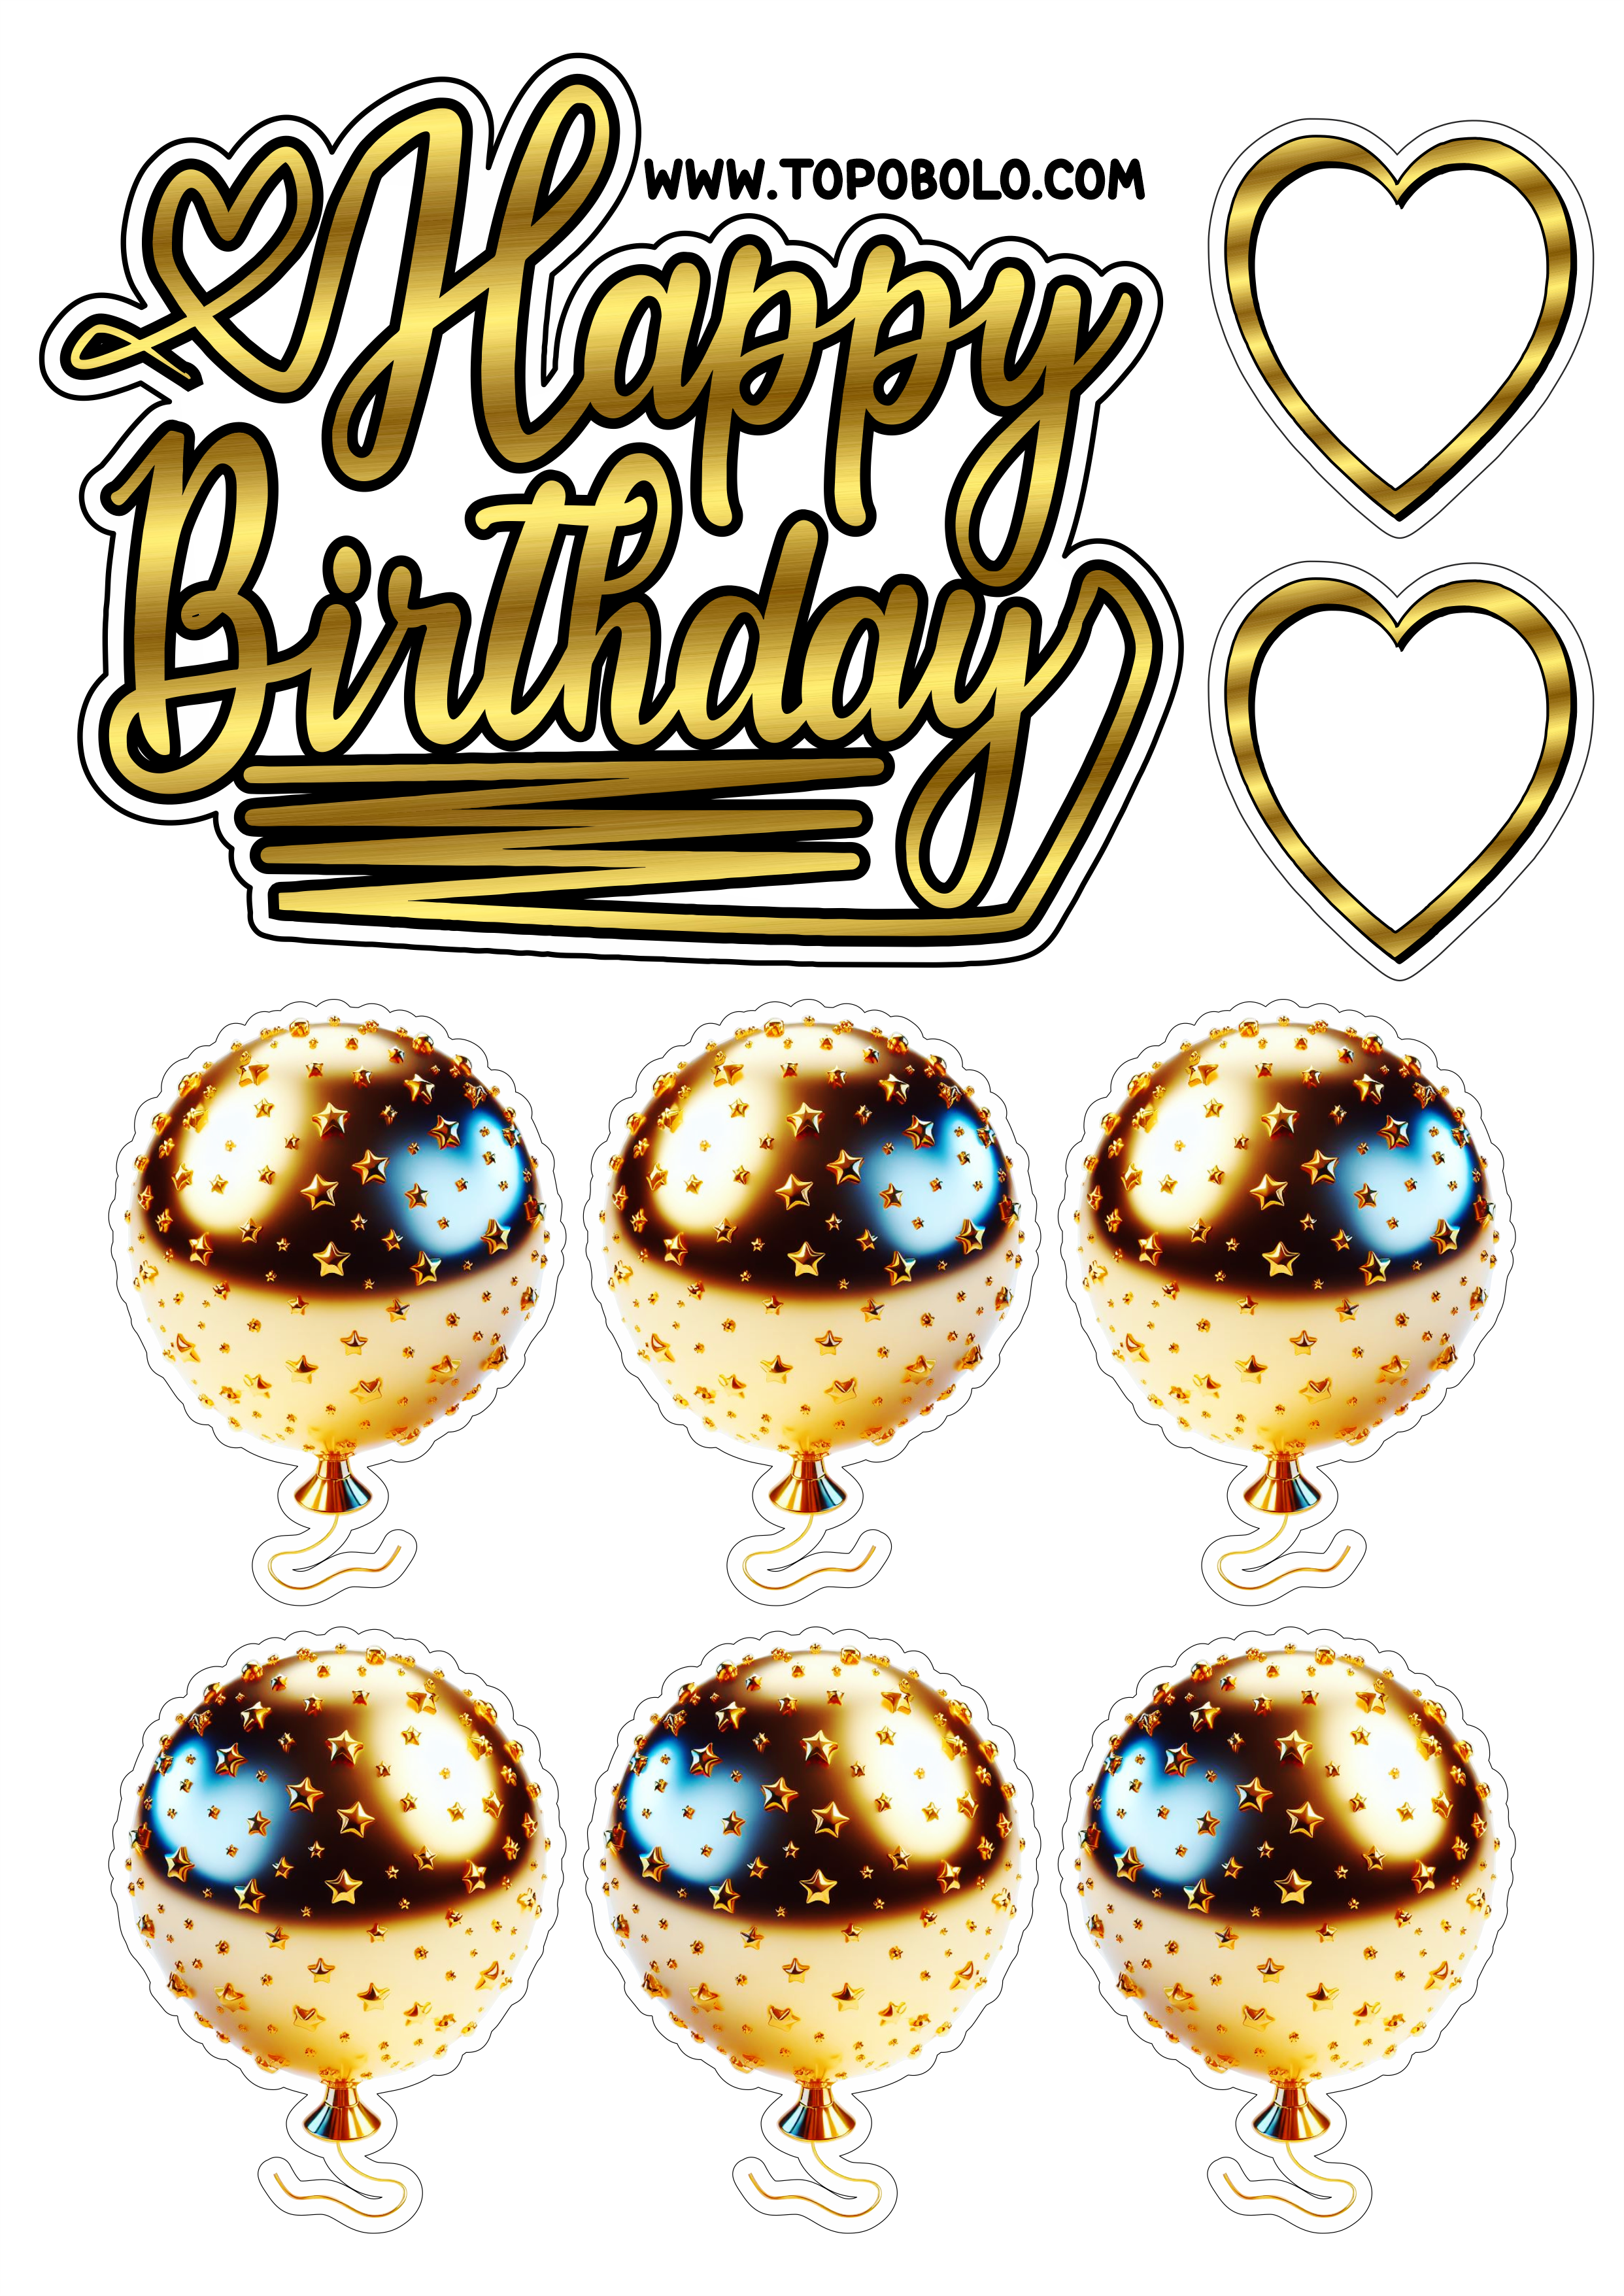 Topo de bolo para imprimir Happy Birthday aniversário dourado com corações e balões artigos personalizados png